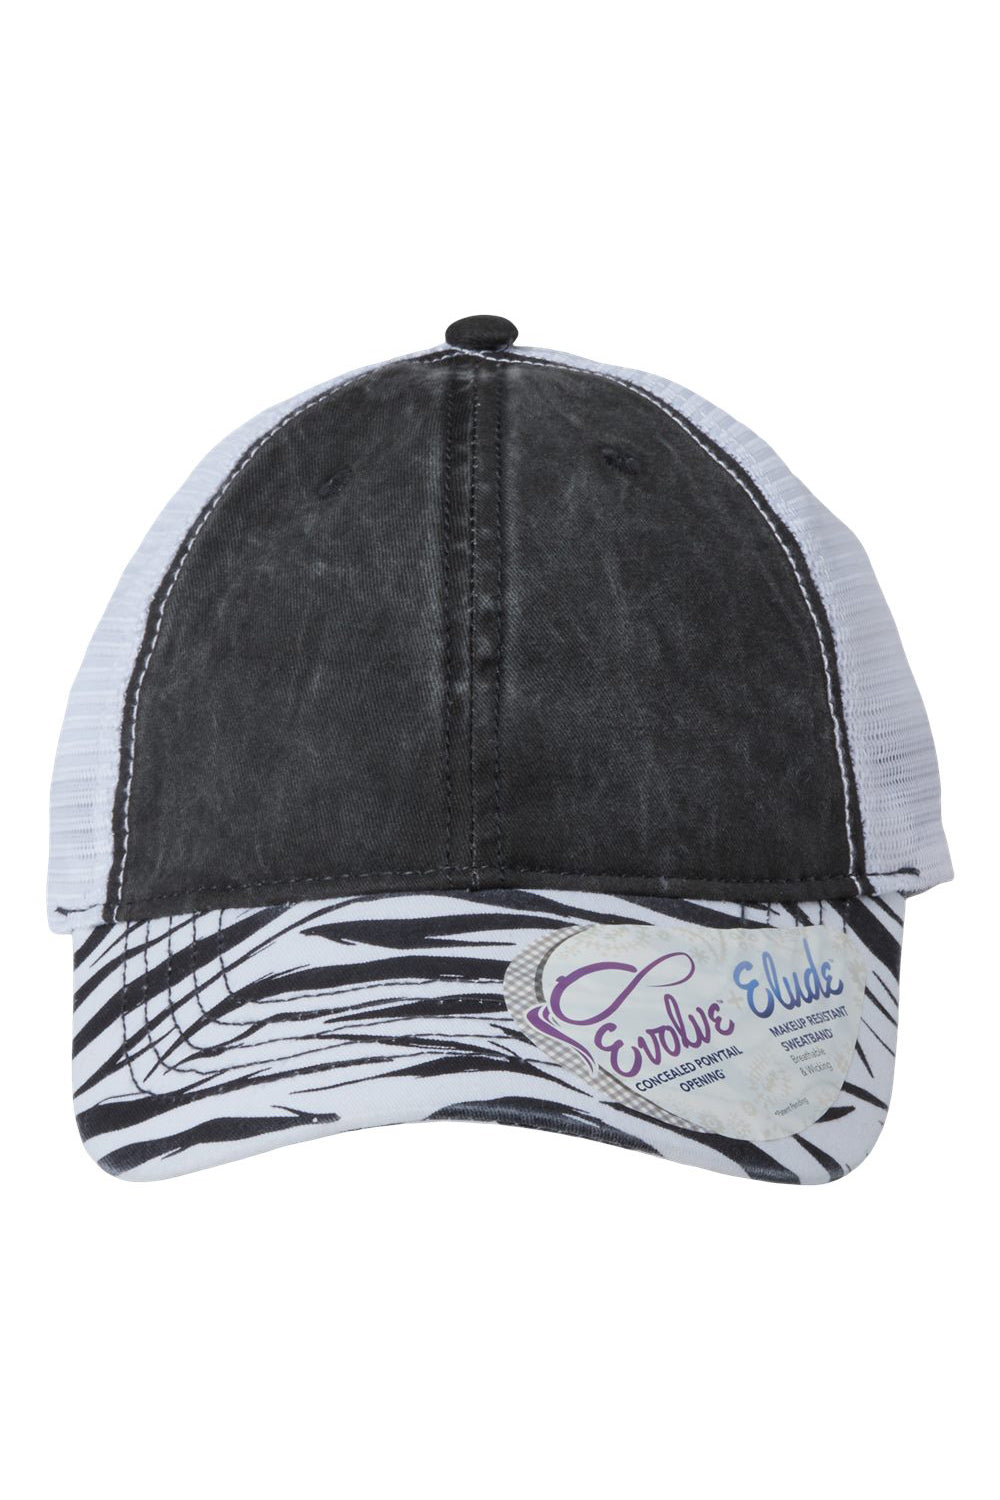 Infinity Her JANET Womens Printed Visor Mesh Back Hat Black/Zebra/White Flat Front